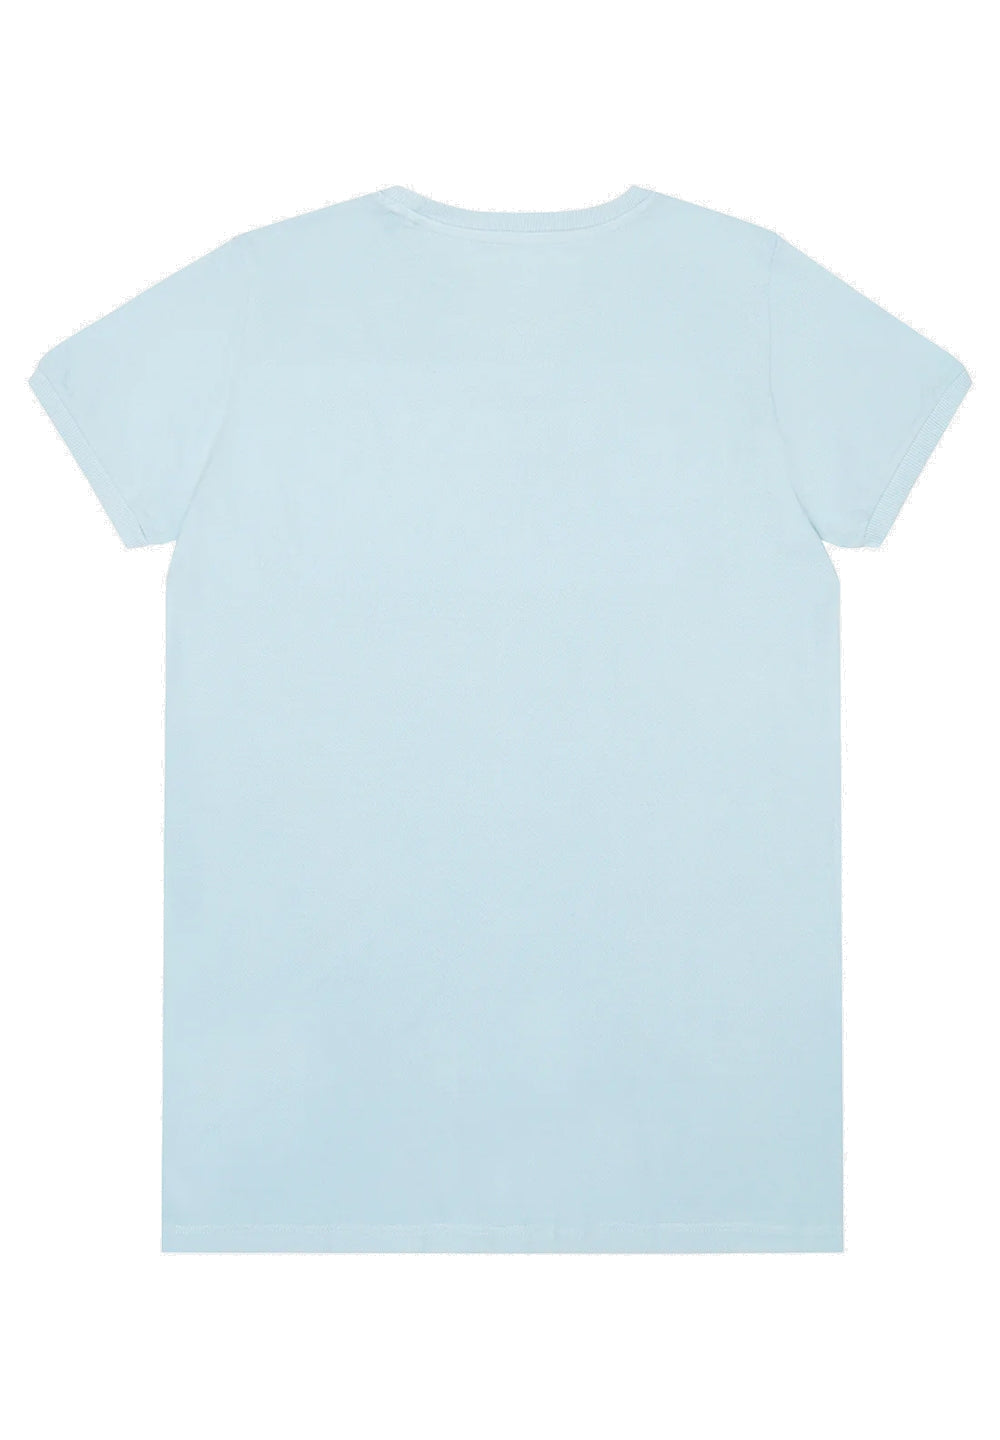 T-shirt celeste per bambino - Primamoda kids